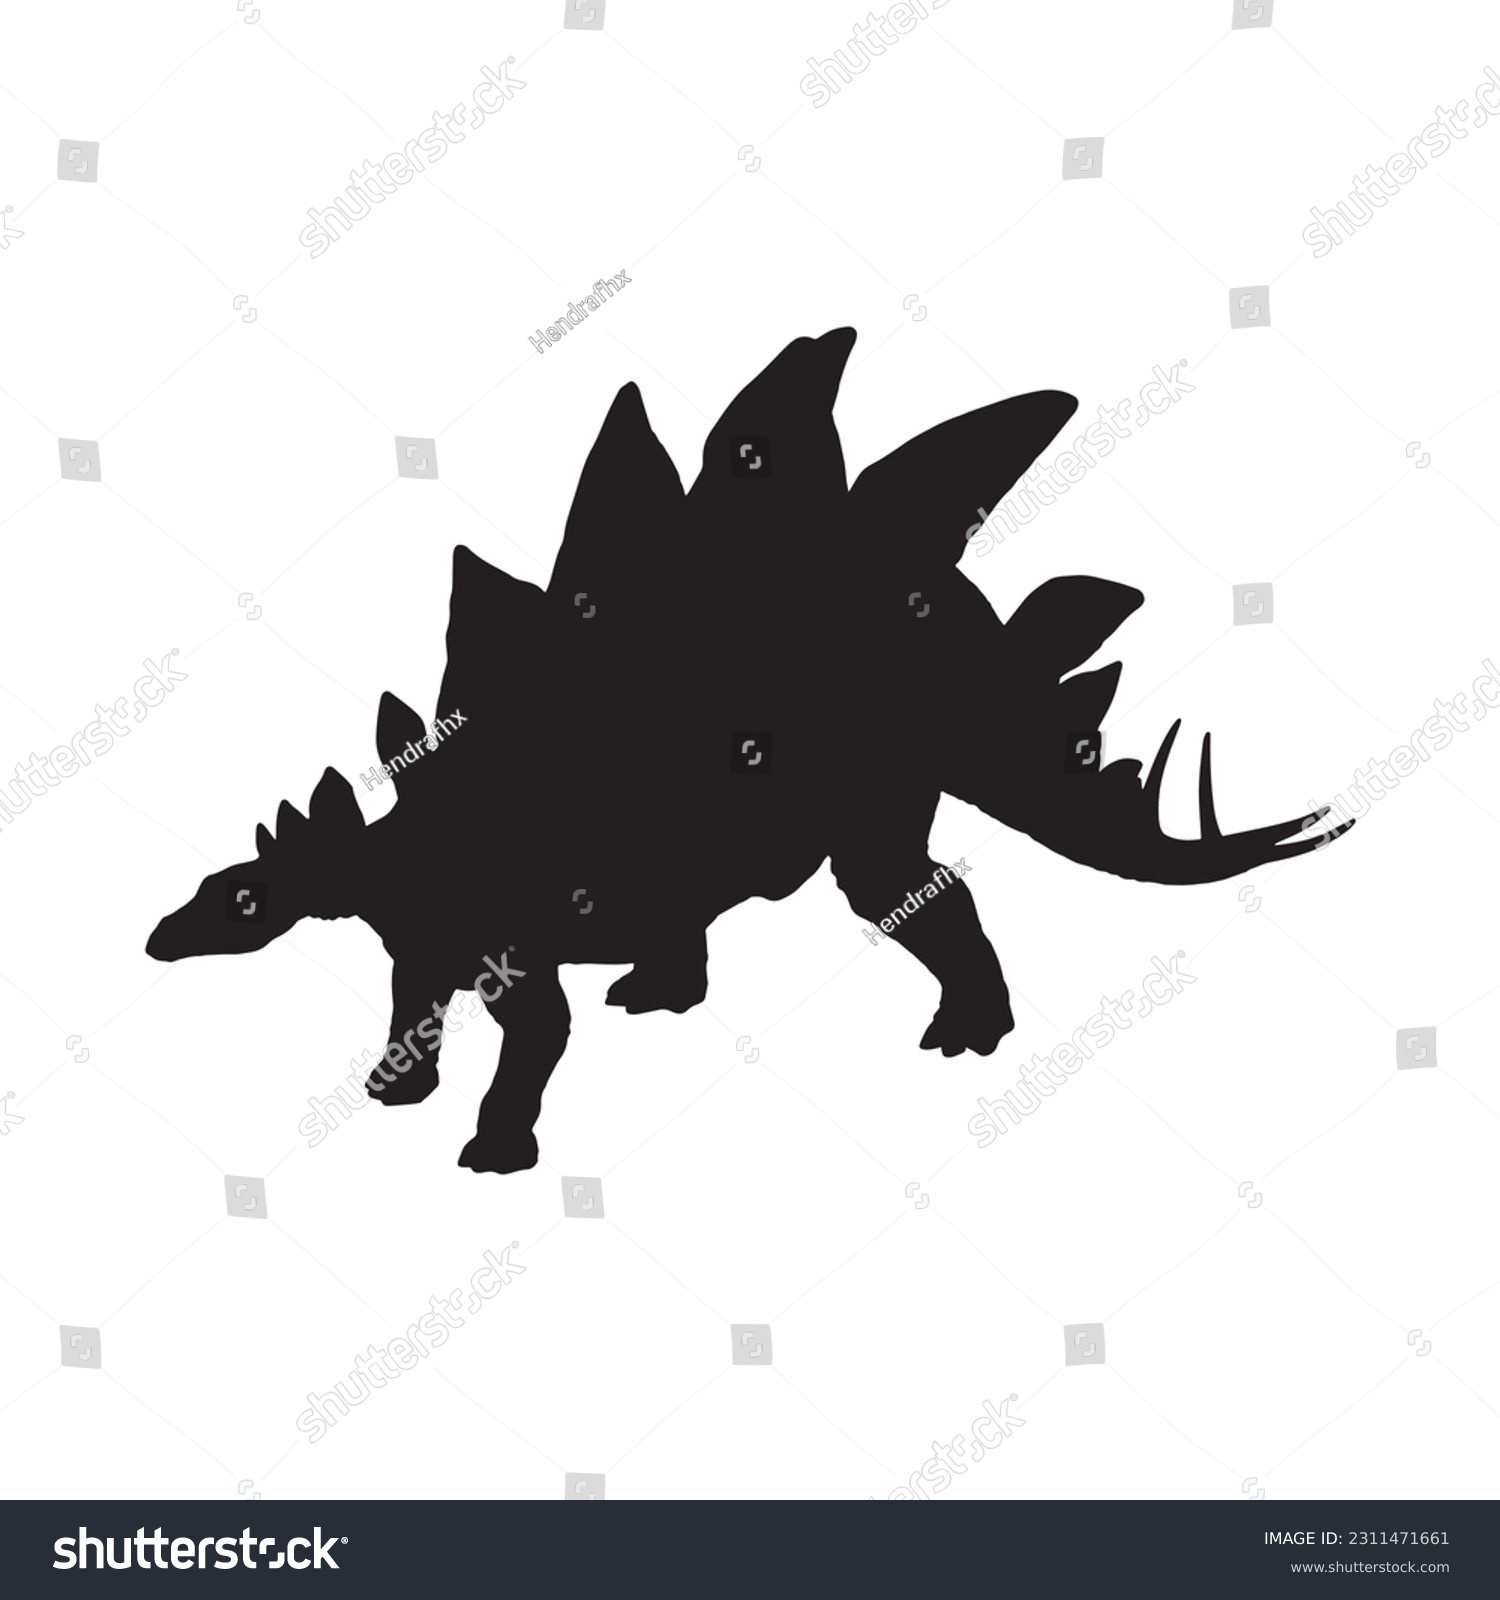 SVG of Vector silhouette of a stegosaurus dinosaurus svg